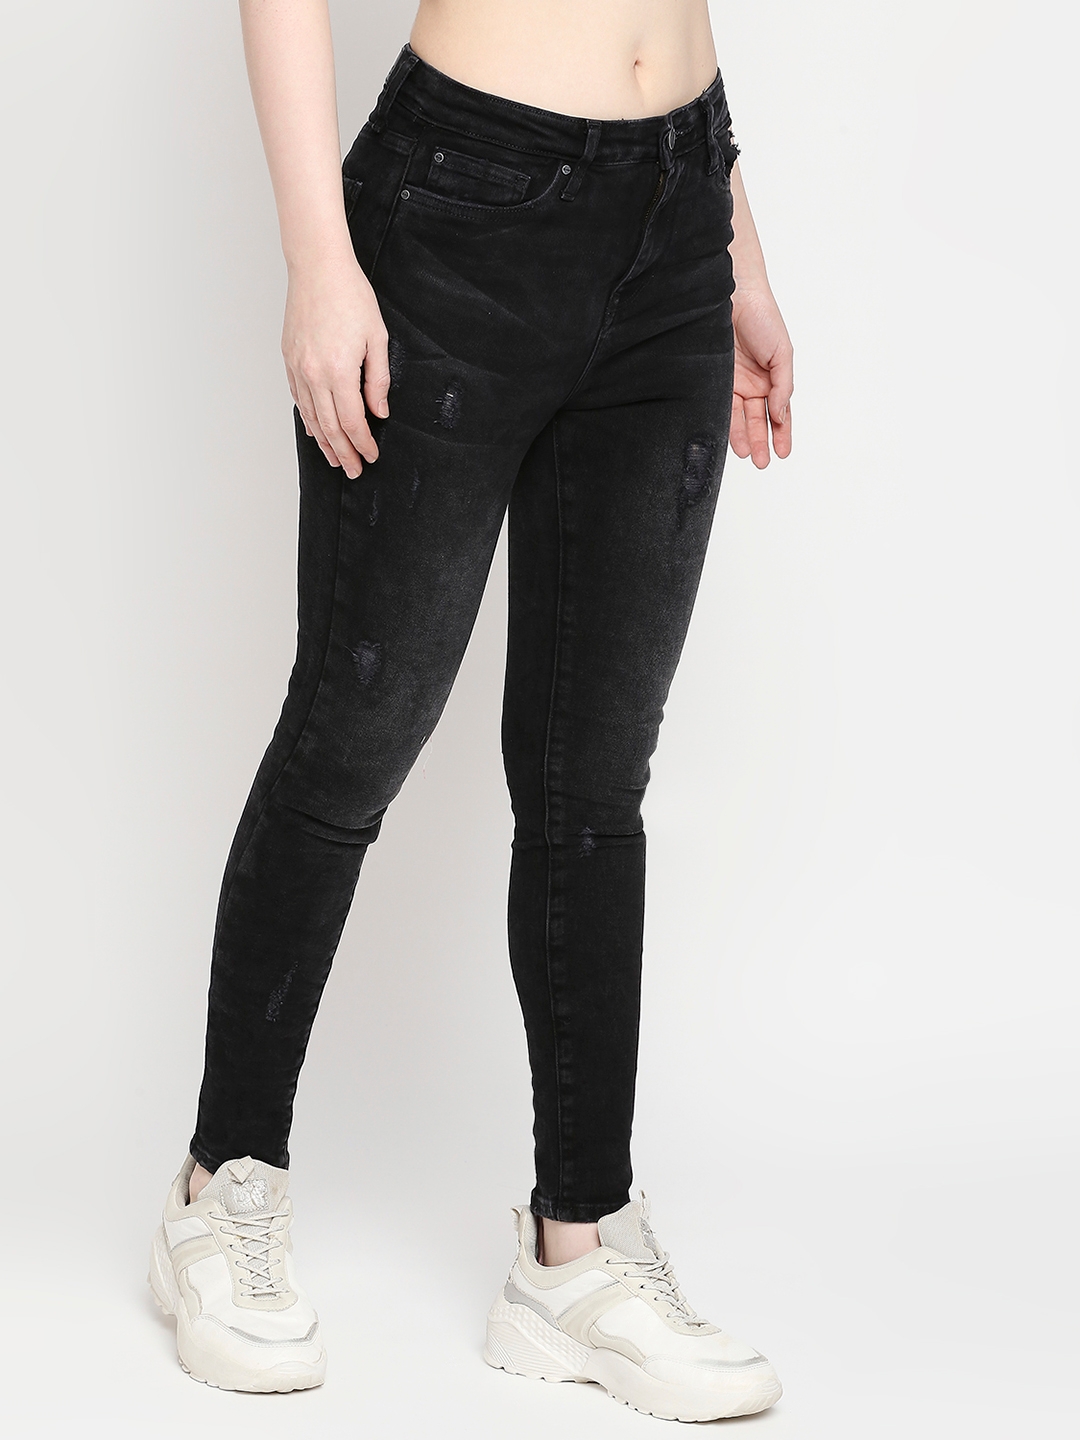 spykar | Women's Black Lycra Solid Jeans 2